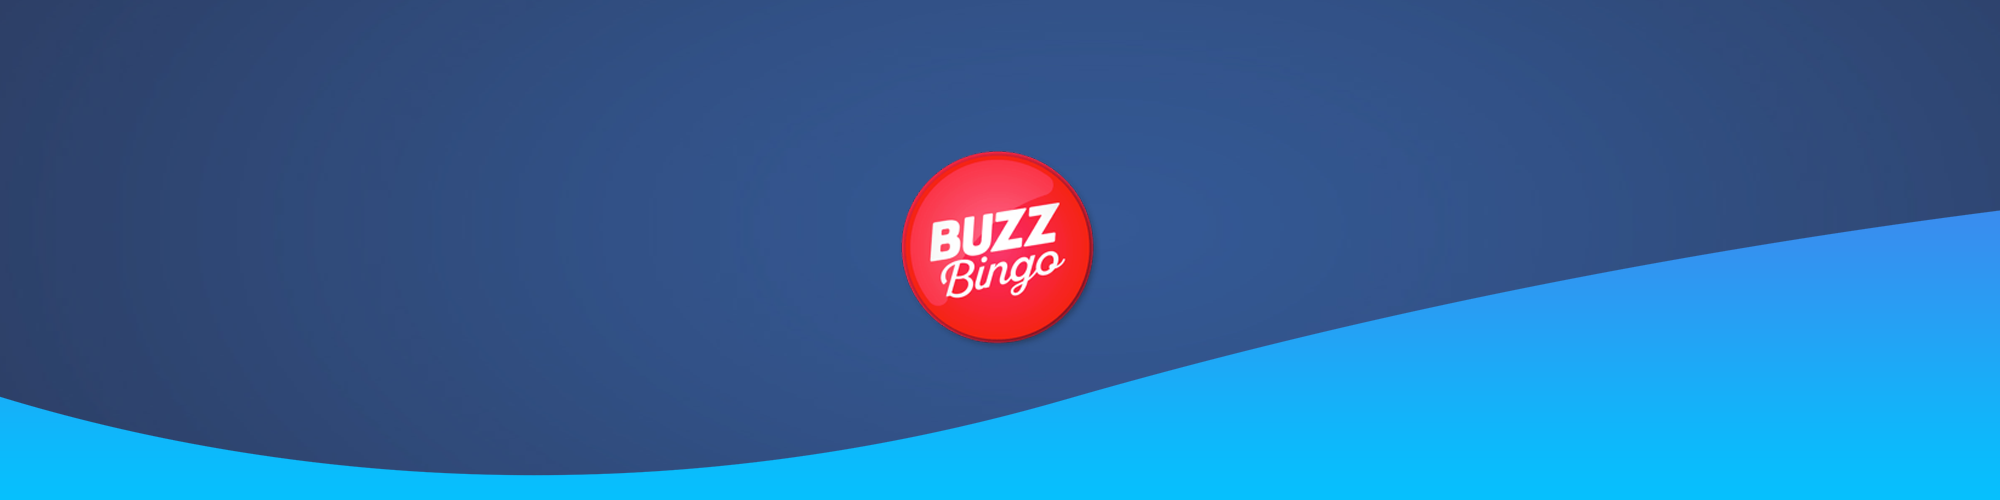 Buzz Bingo Alternative on EazeGames